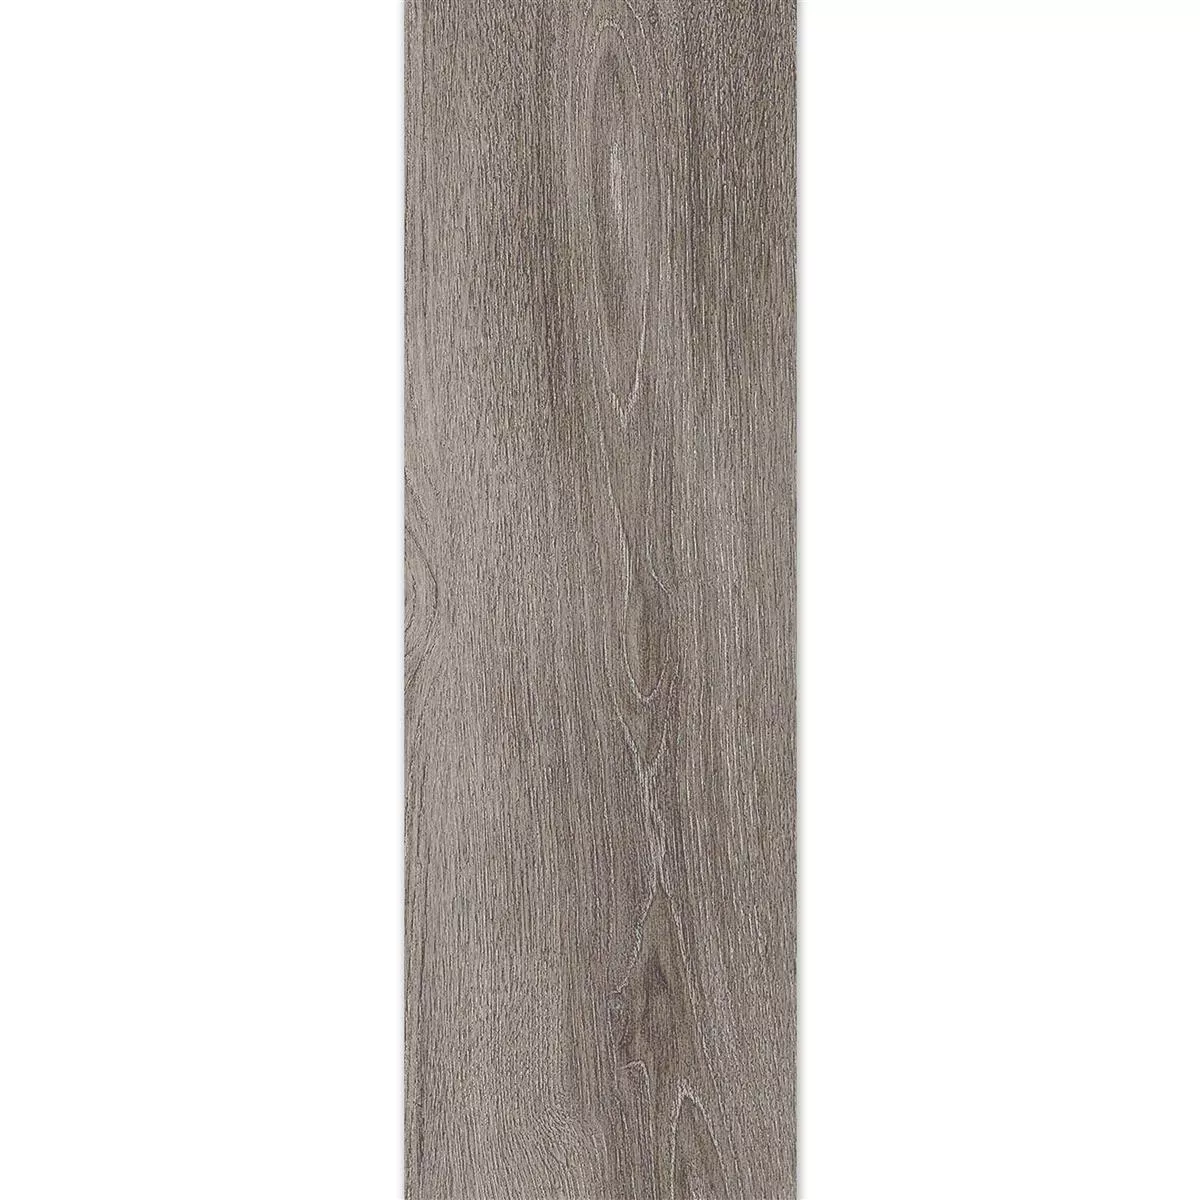 Płytki Podłogowe Regina Wygląd Drewna 20x120cm Srebrny